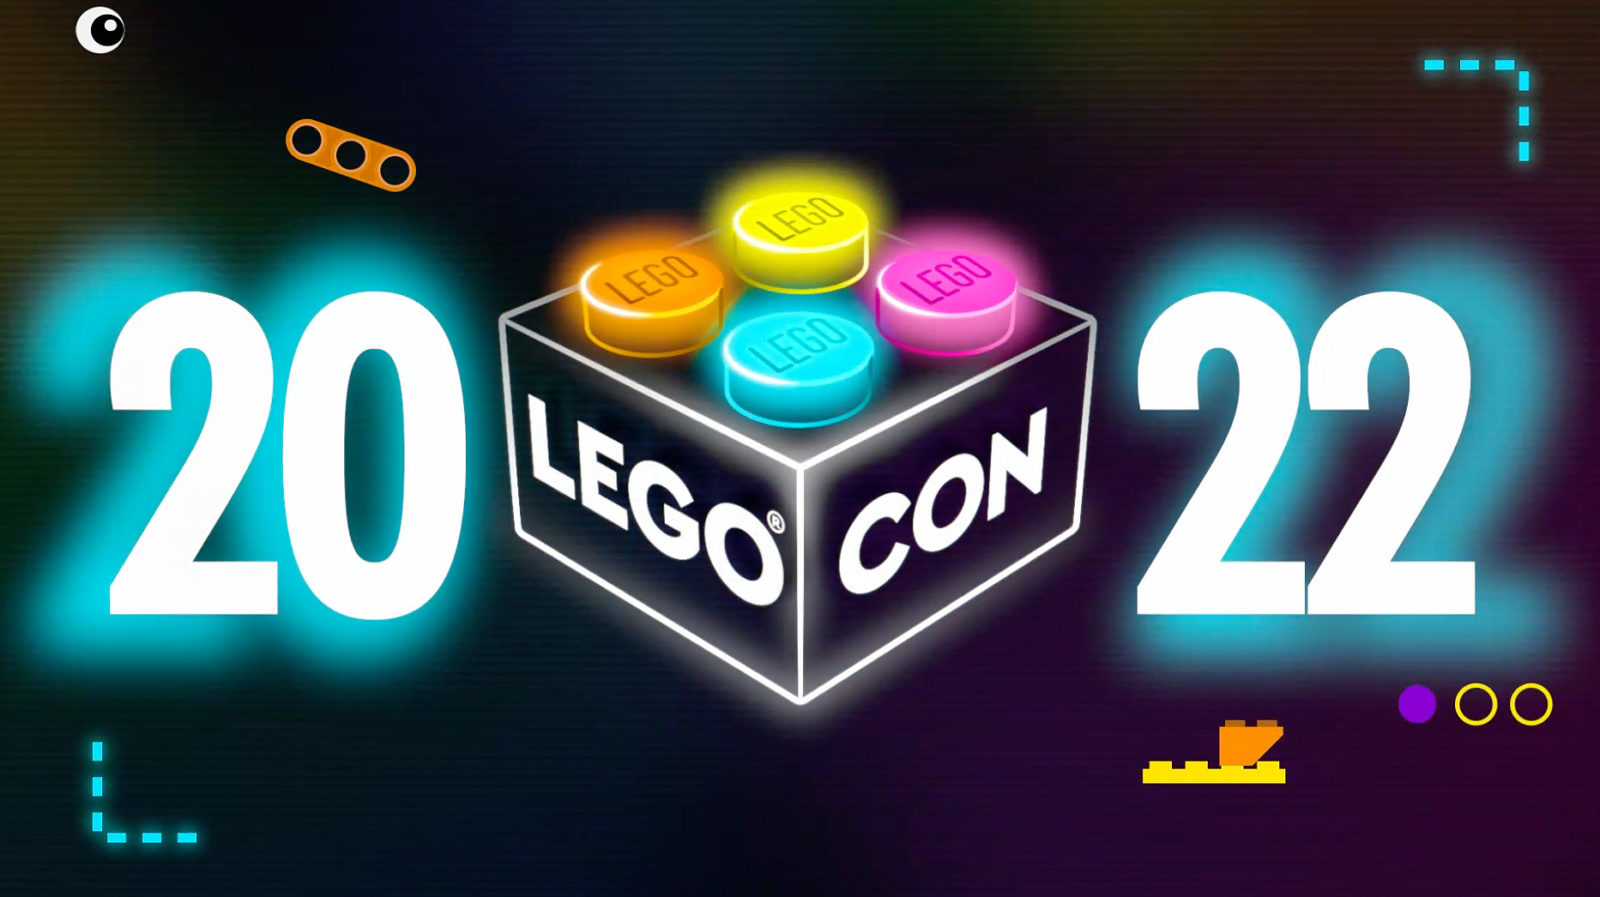 लेगो कॉन 2022: लेगो ऑनलाइन कन्वेंशन 18 जून, 2022 को लौटता है